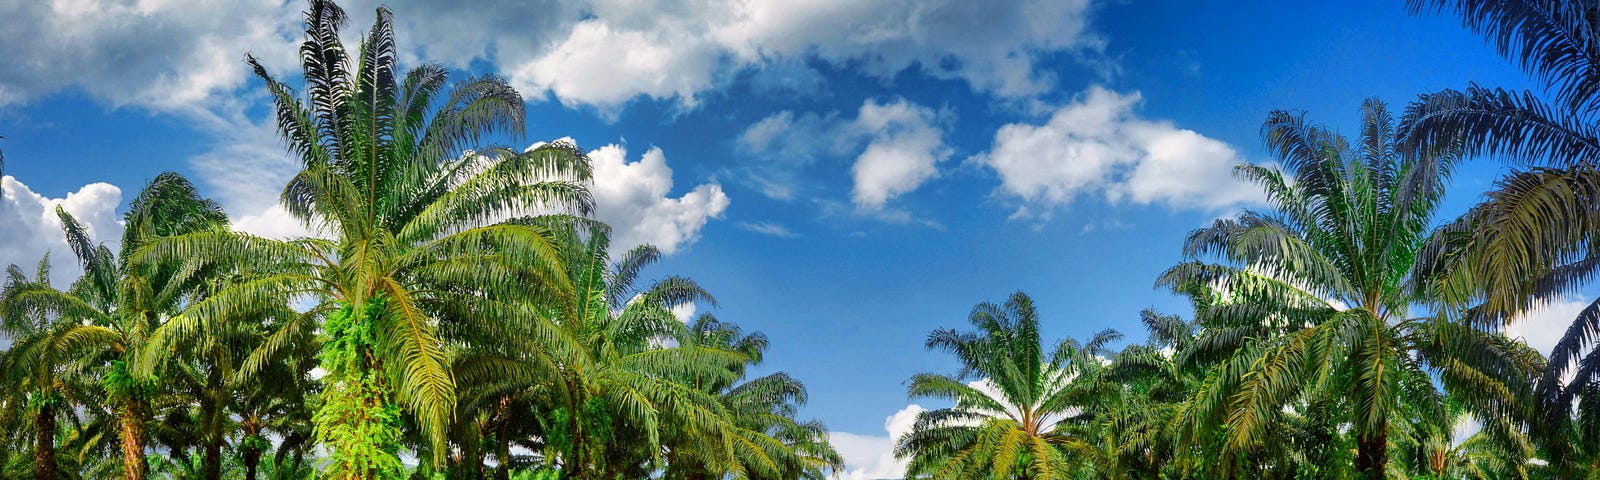 A palm oil plantation on a sunny day